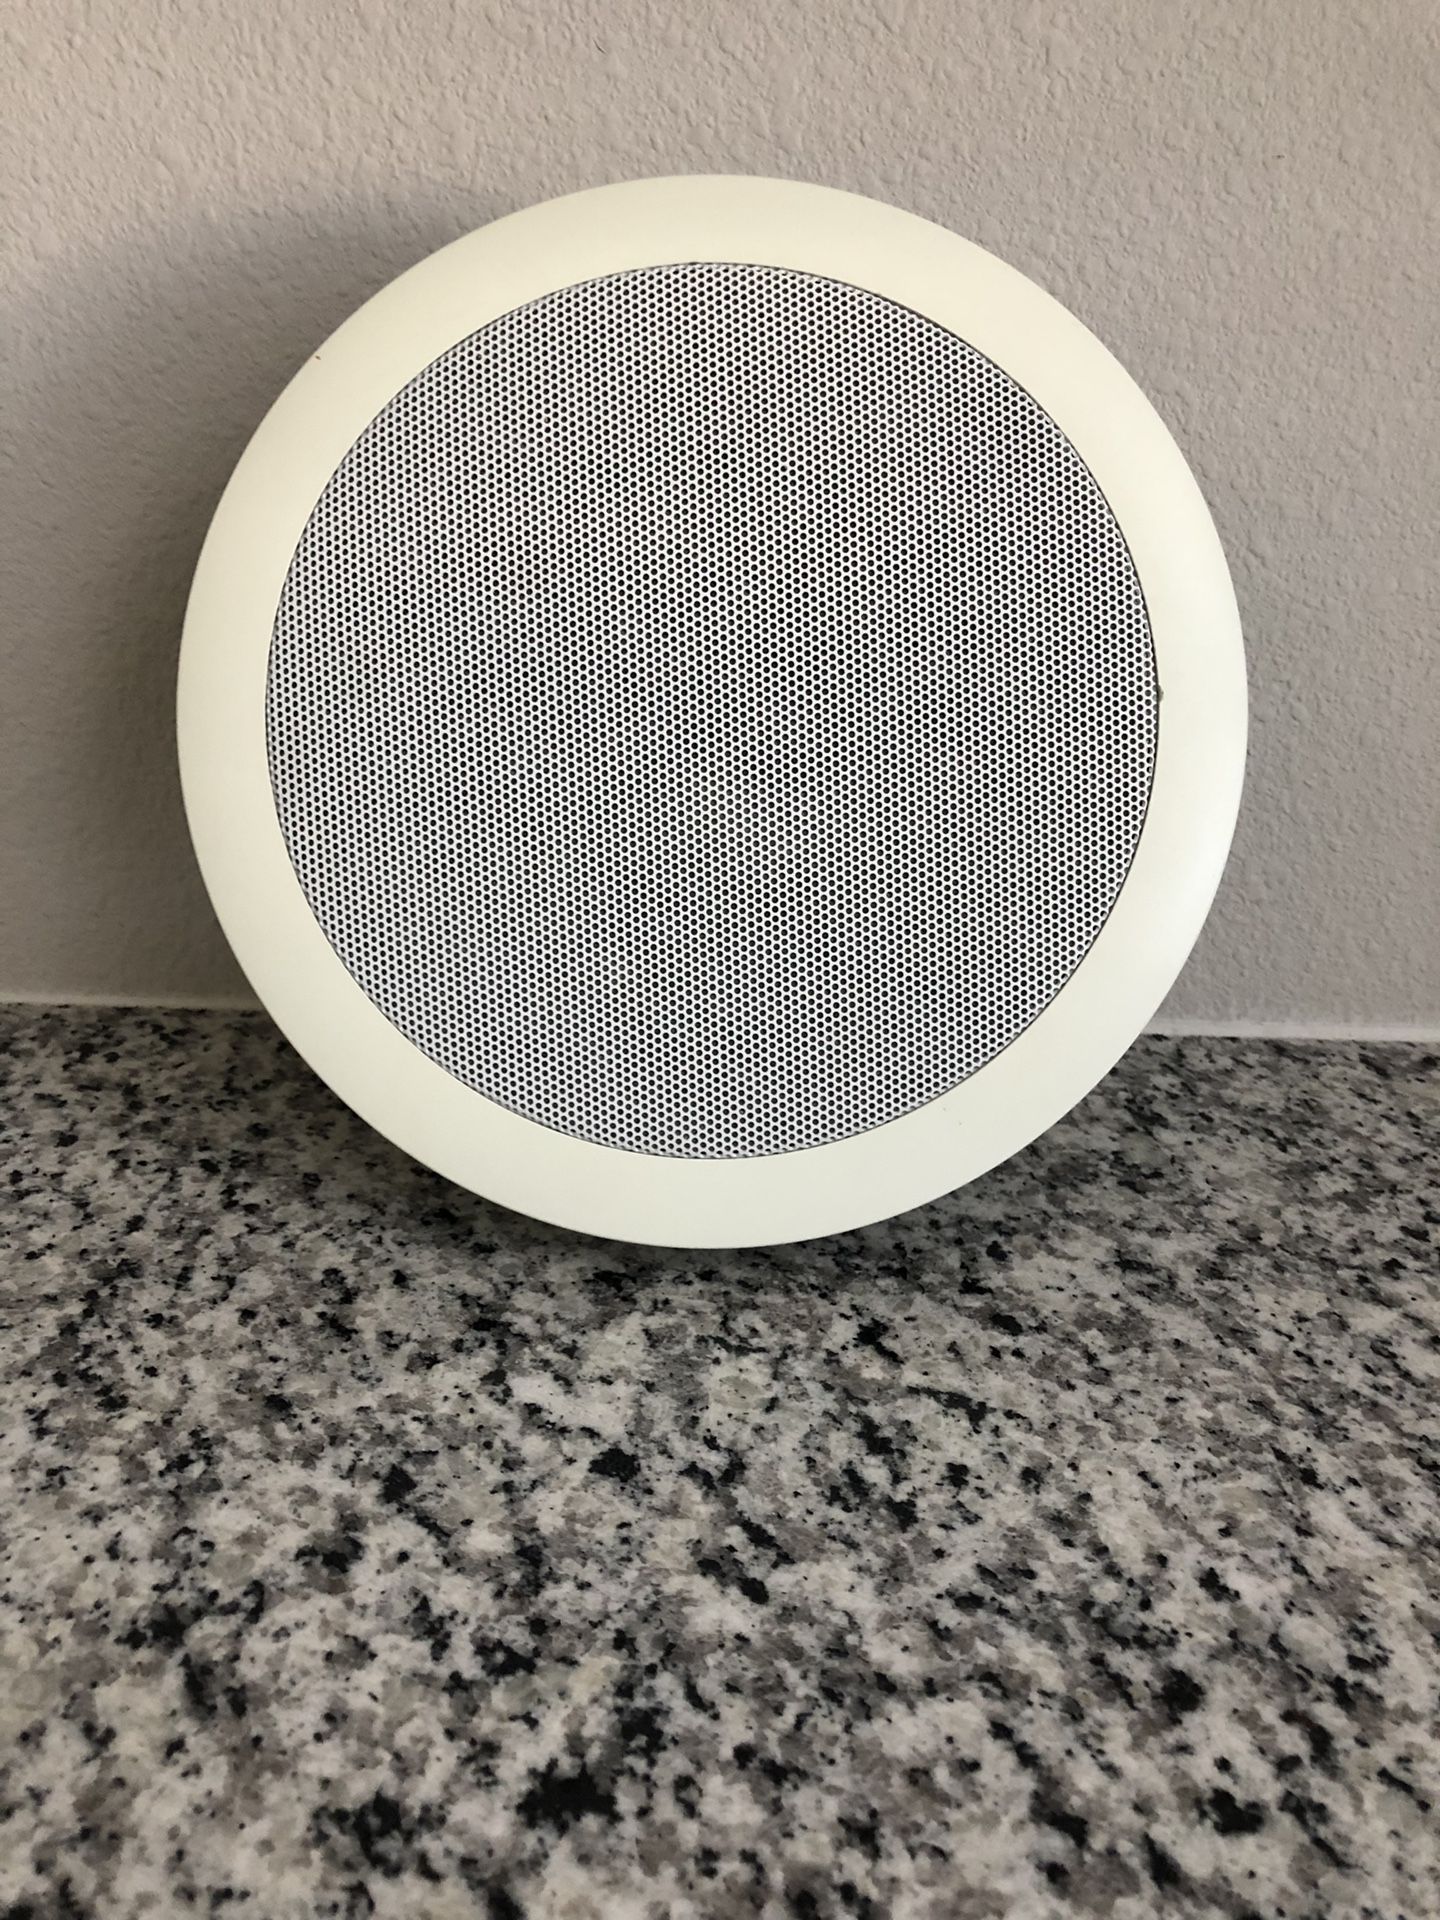 Polk audio in-ceiling wall speaker.